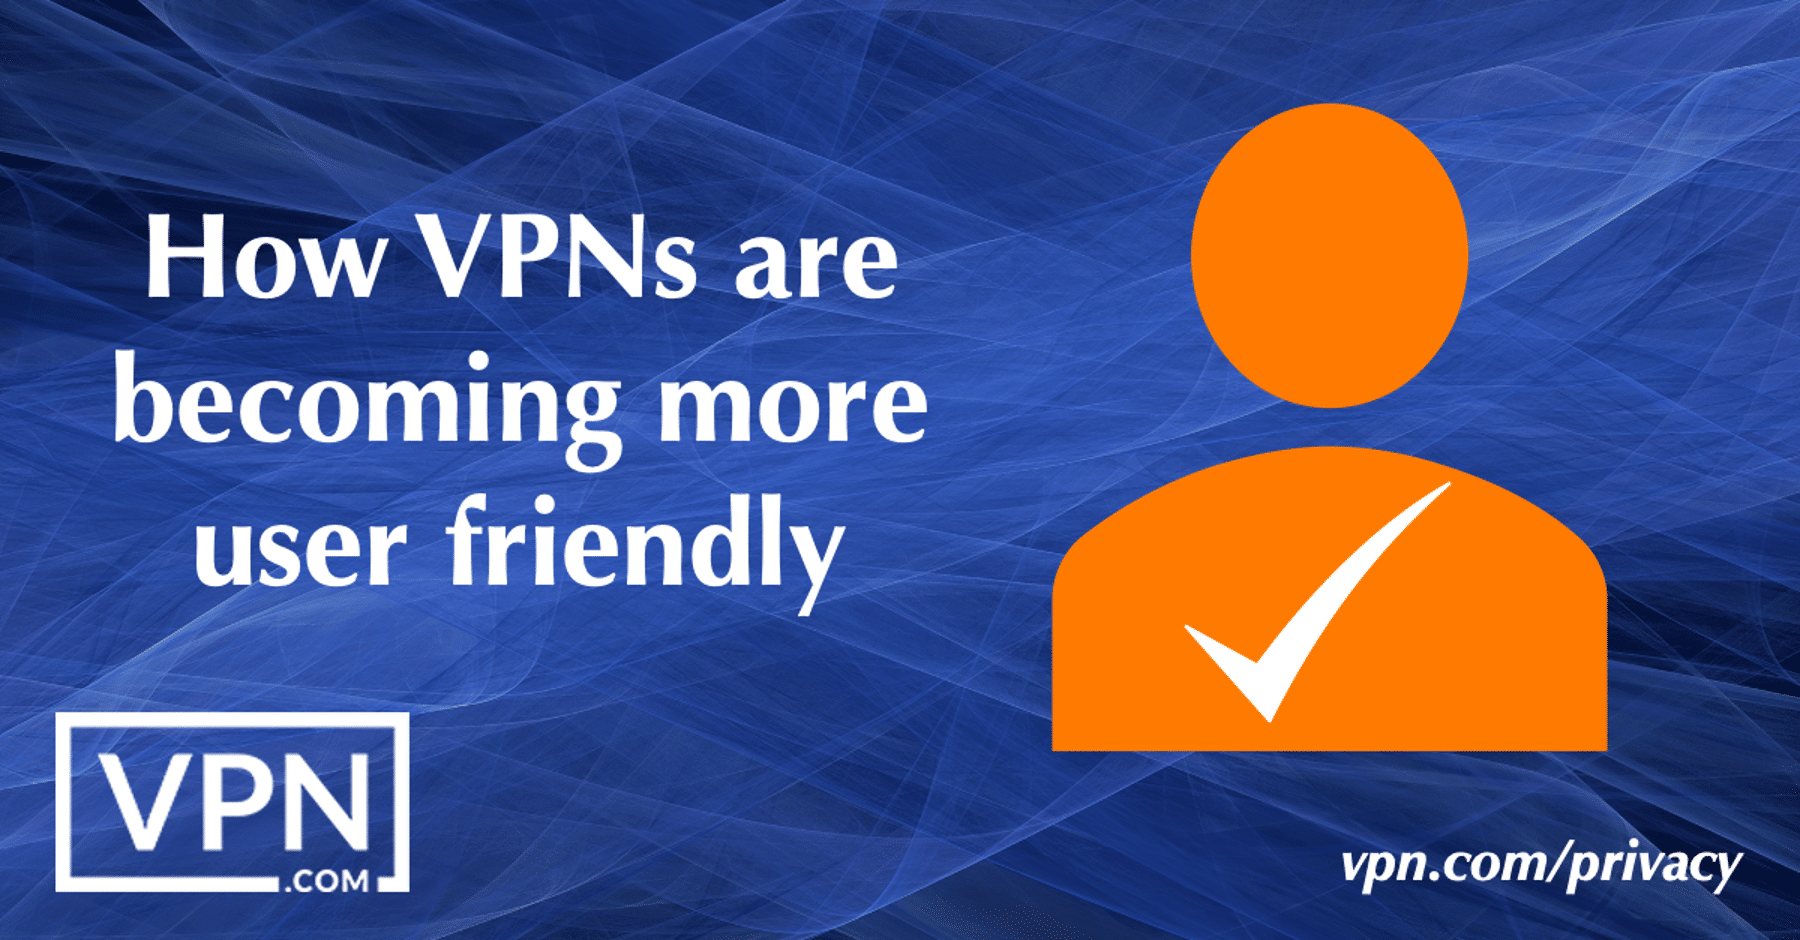 Hogyan válnak a VPN-ek egyre felhasználóbarátabbá.